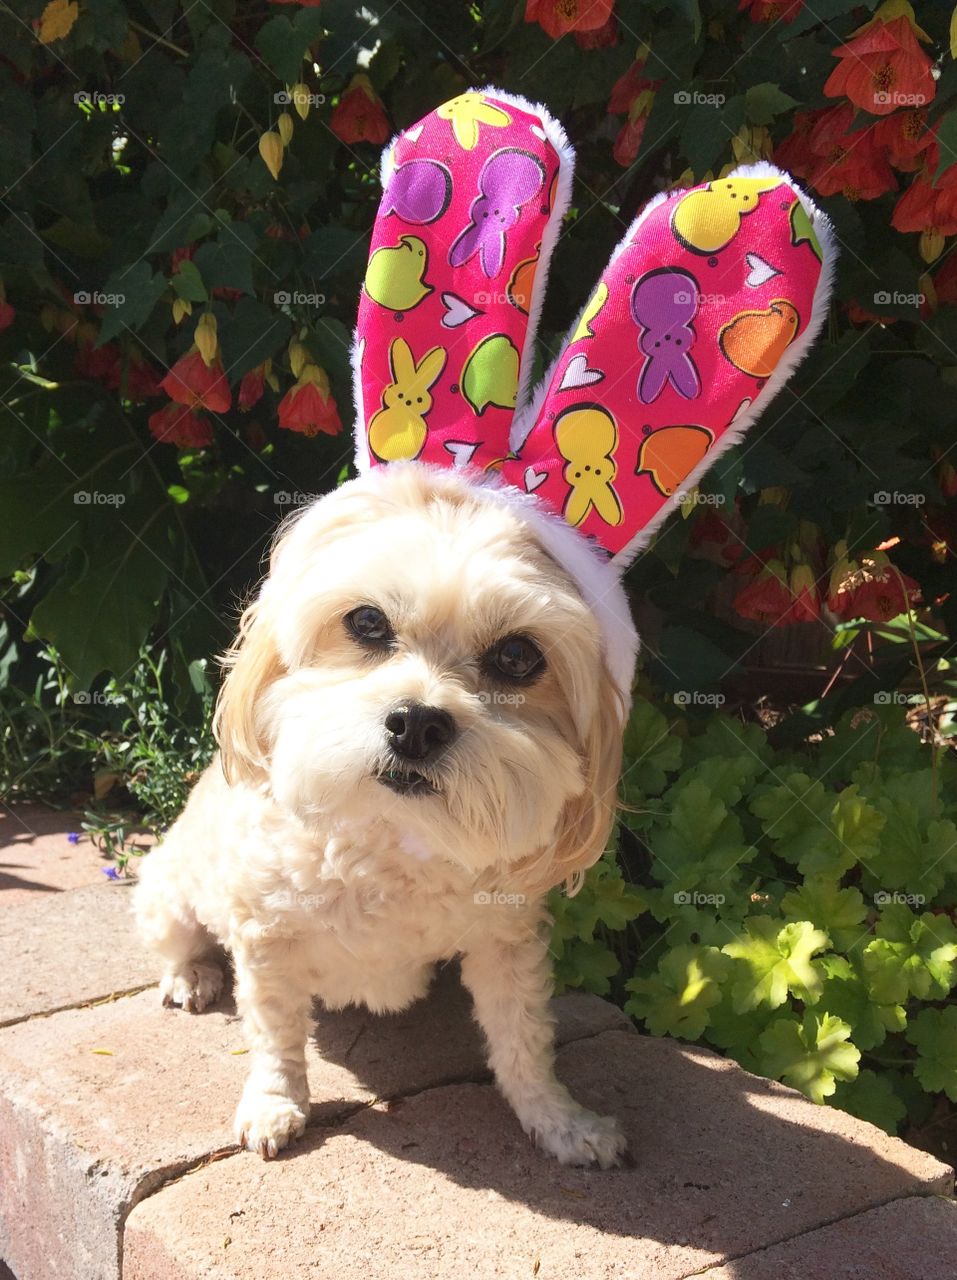 Easter Bunny dog peeps pink purple yellow ears